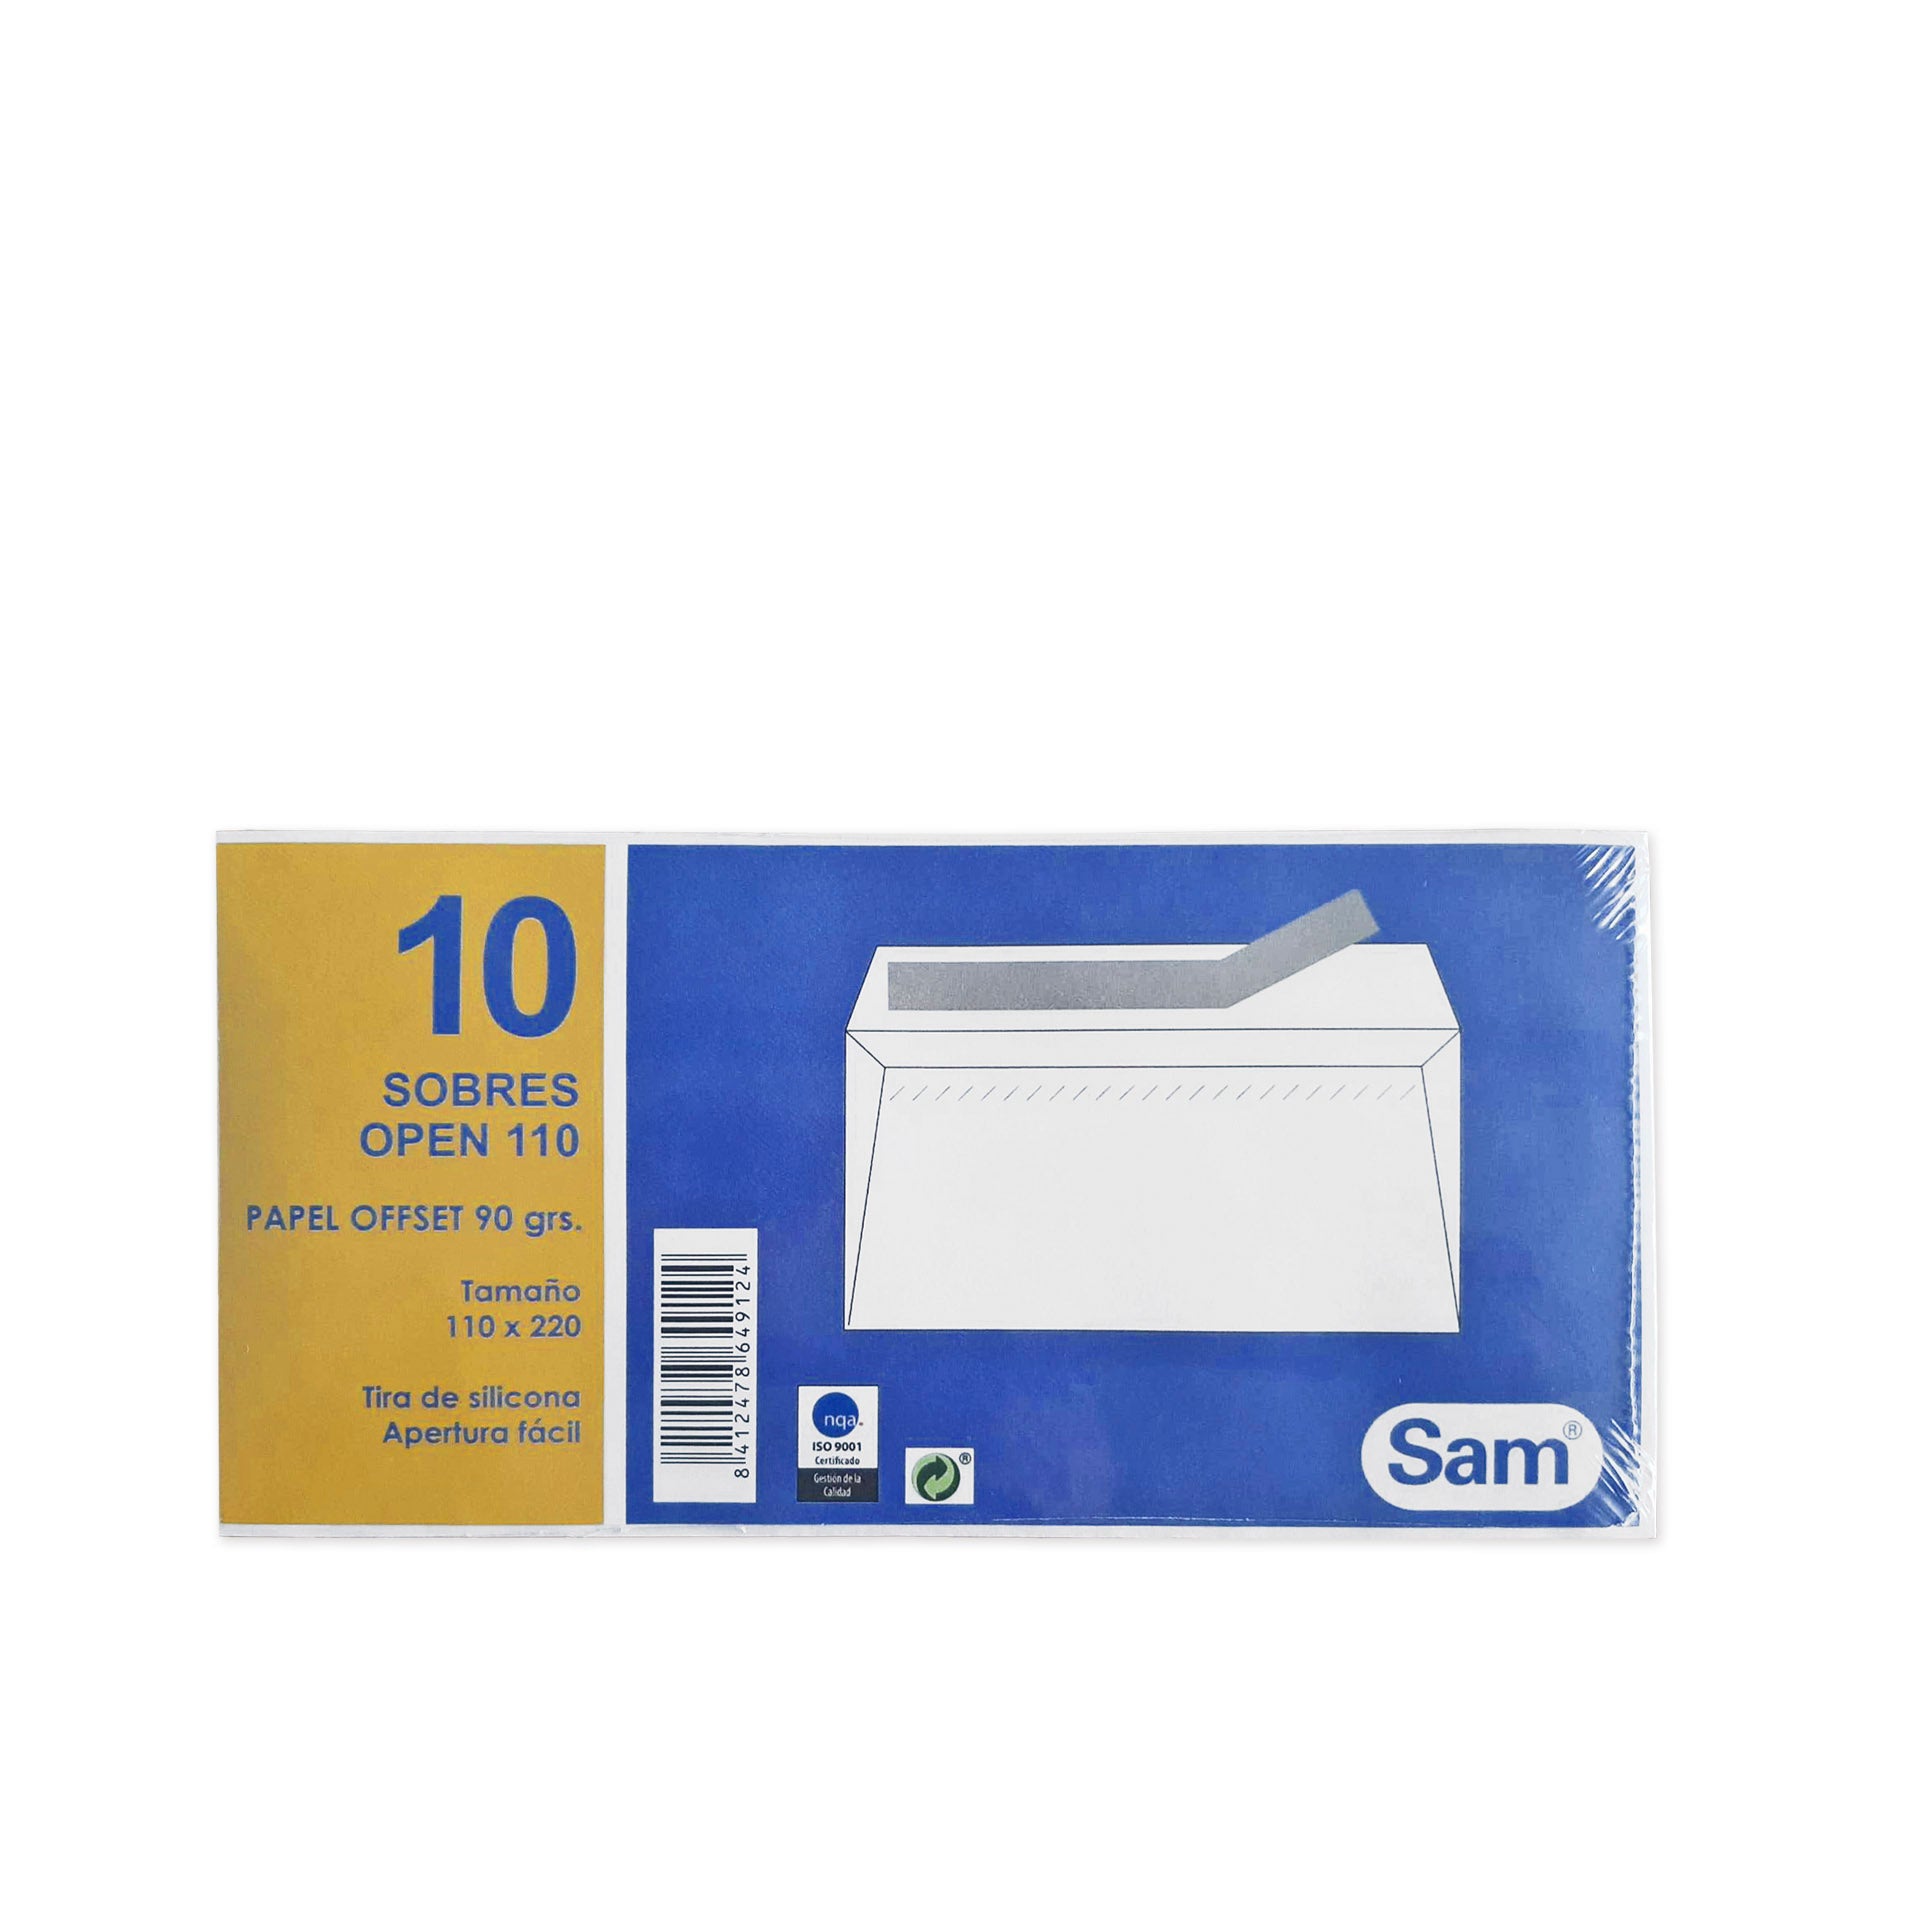 Sam Pack 10 Envelopes DL Papel Brancos